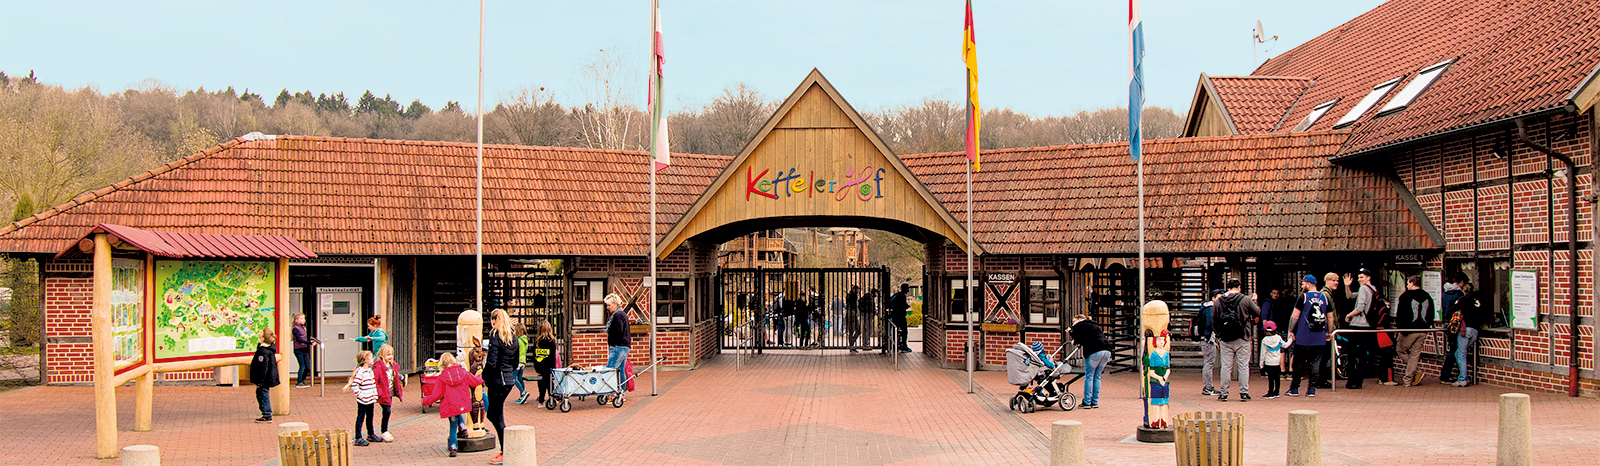 Osmo Referenz - Eingang des Ketteler Hof Erlebnispark in Haltern mit vielen Besuchern und vielen Kindern